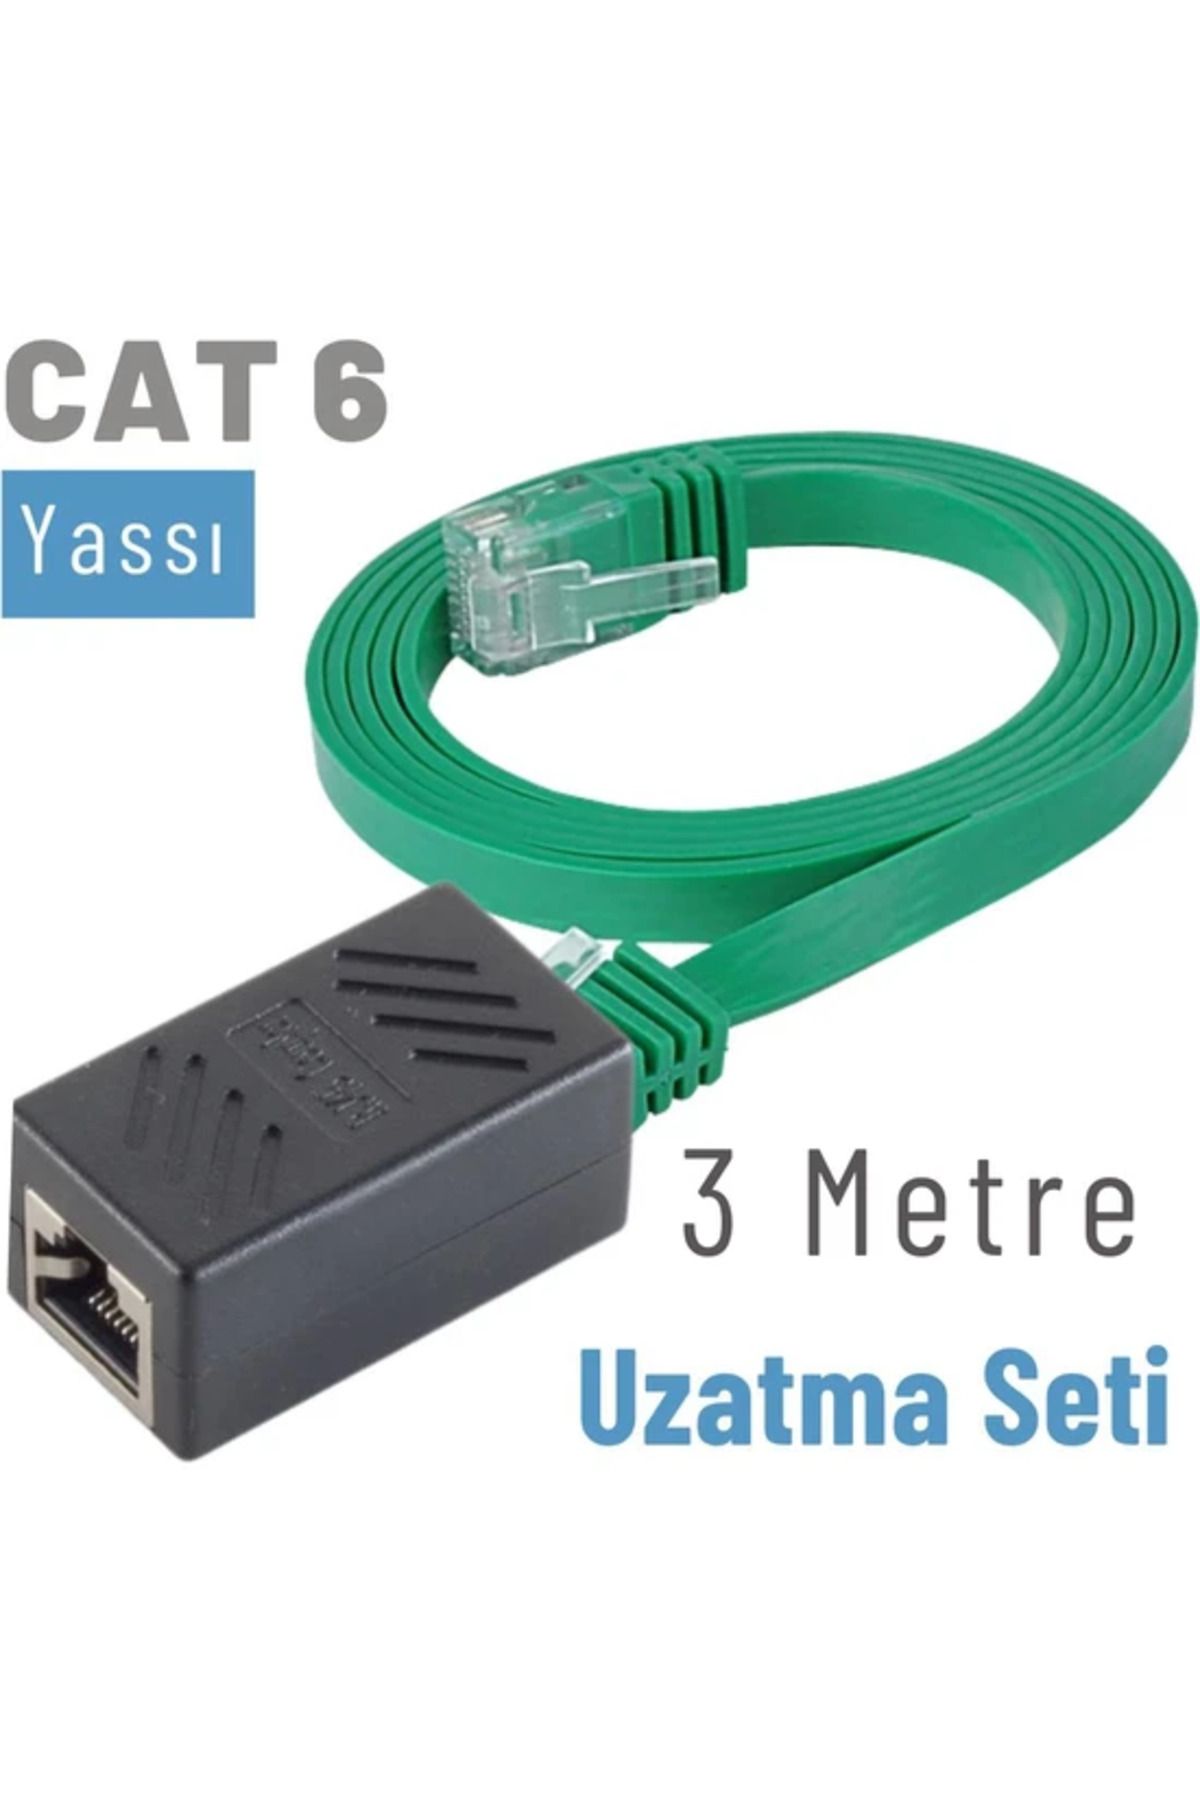 IRENIS Cat6 Kablo 3 Metre Uzatma Seti, Yassı Ethernet Kablo Ve Ekleyici, Yeşil